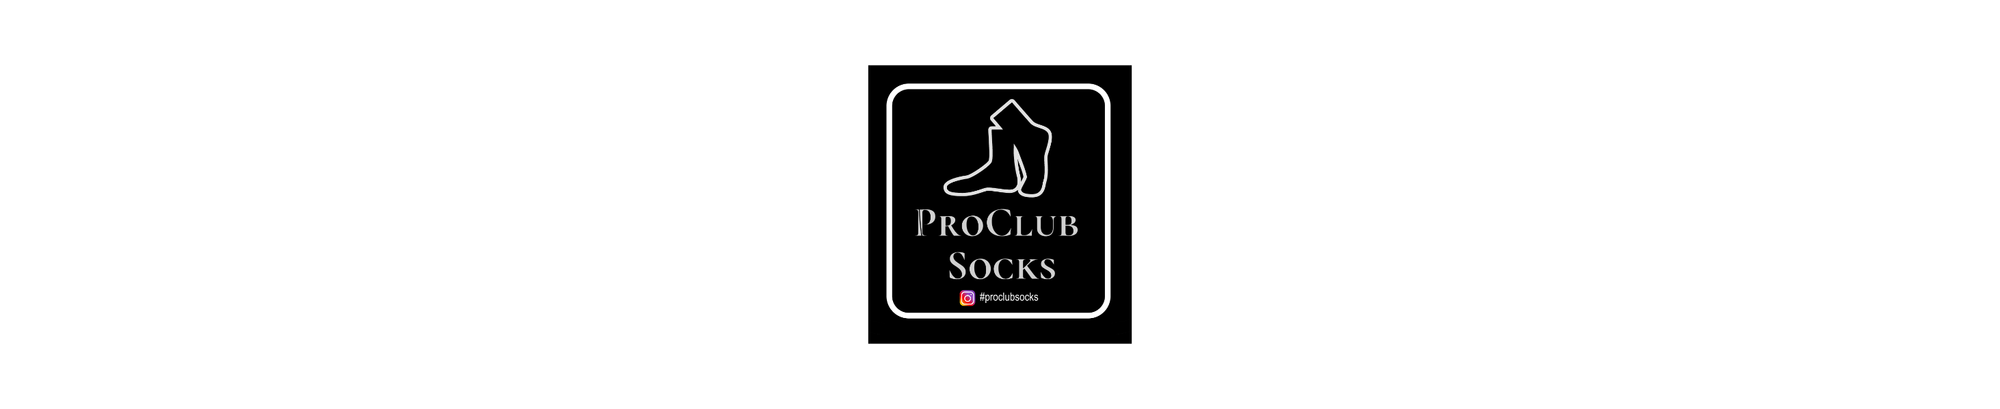 PRO CLUB SOCKS